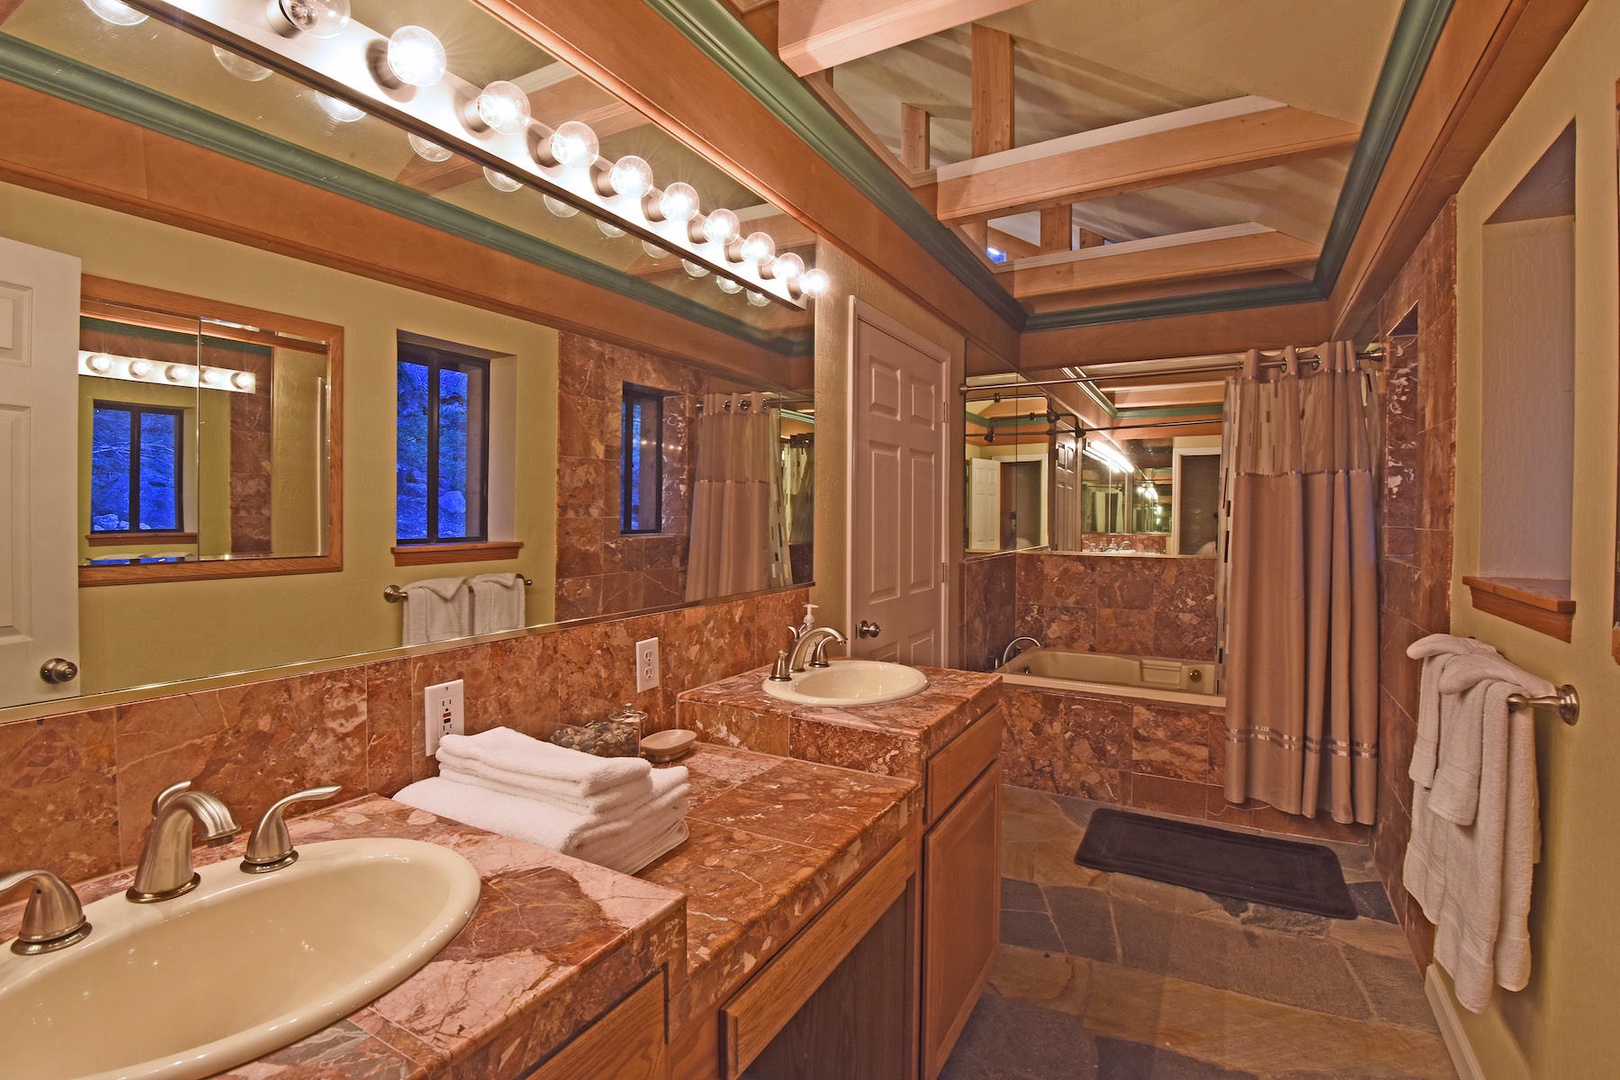 En suite master bathroom with dual sinks